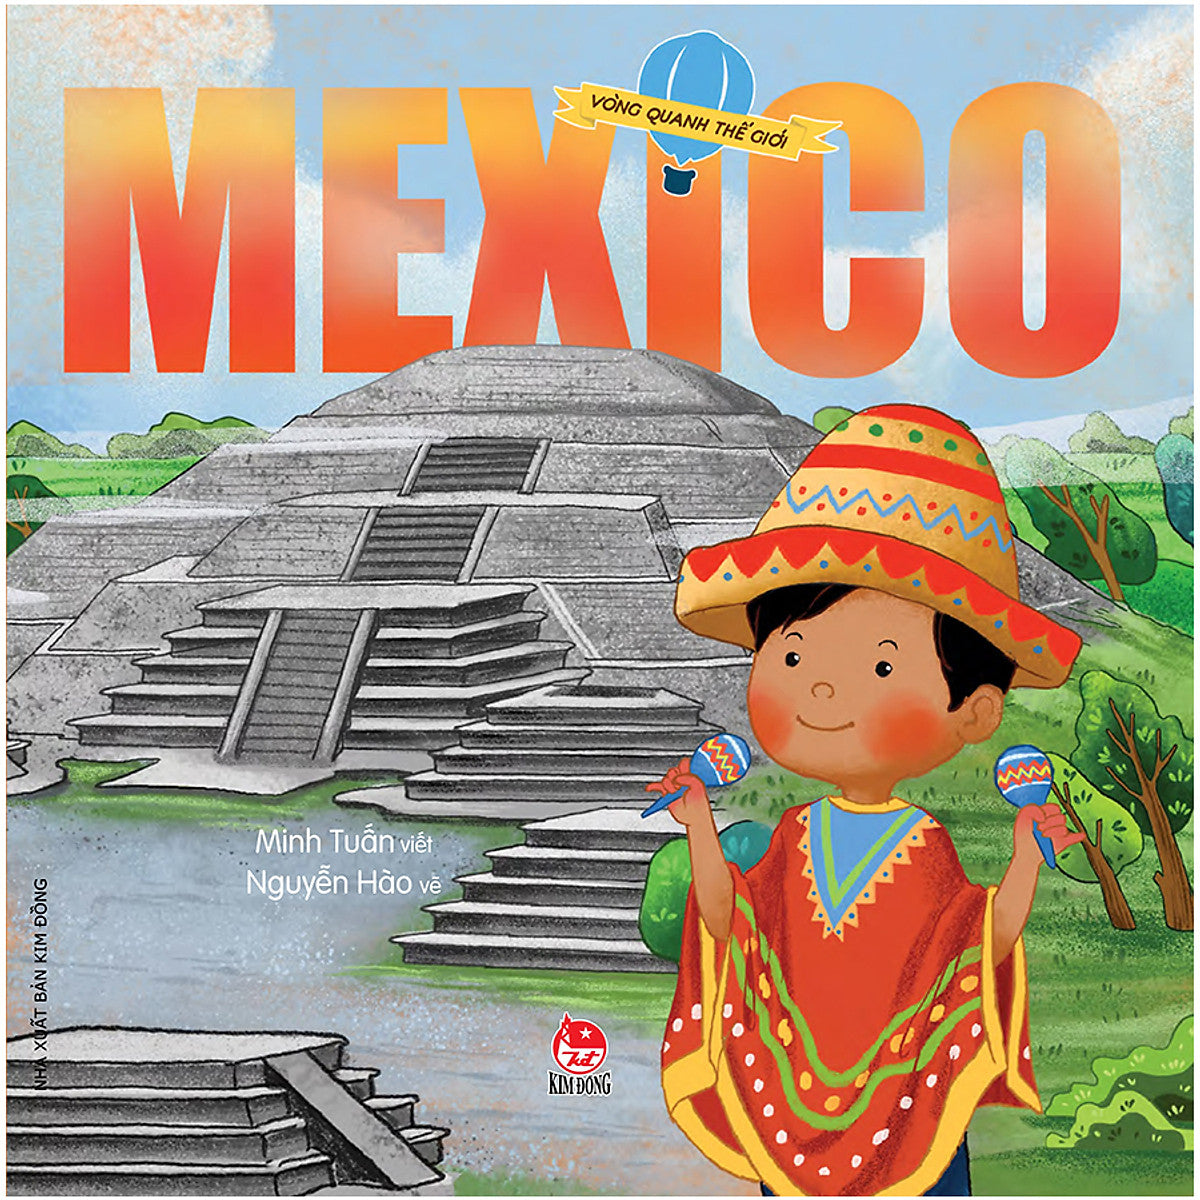 Vòng Quanh Thế Giới Mexico